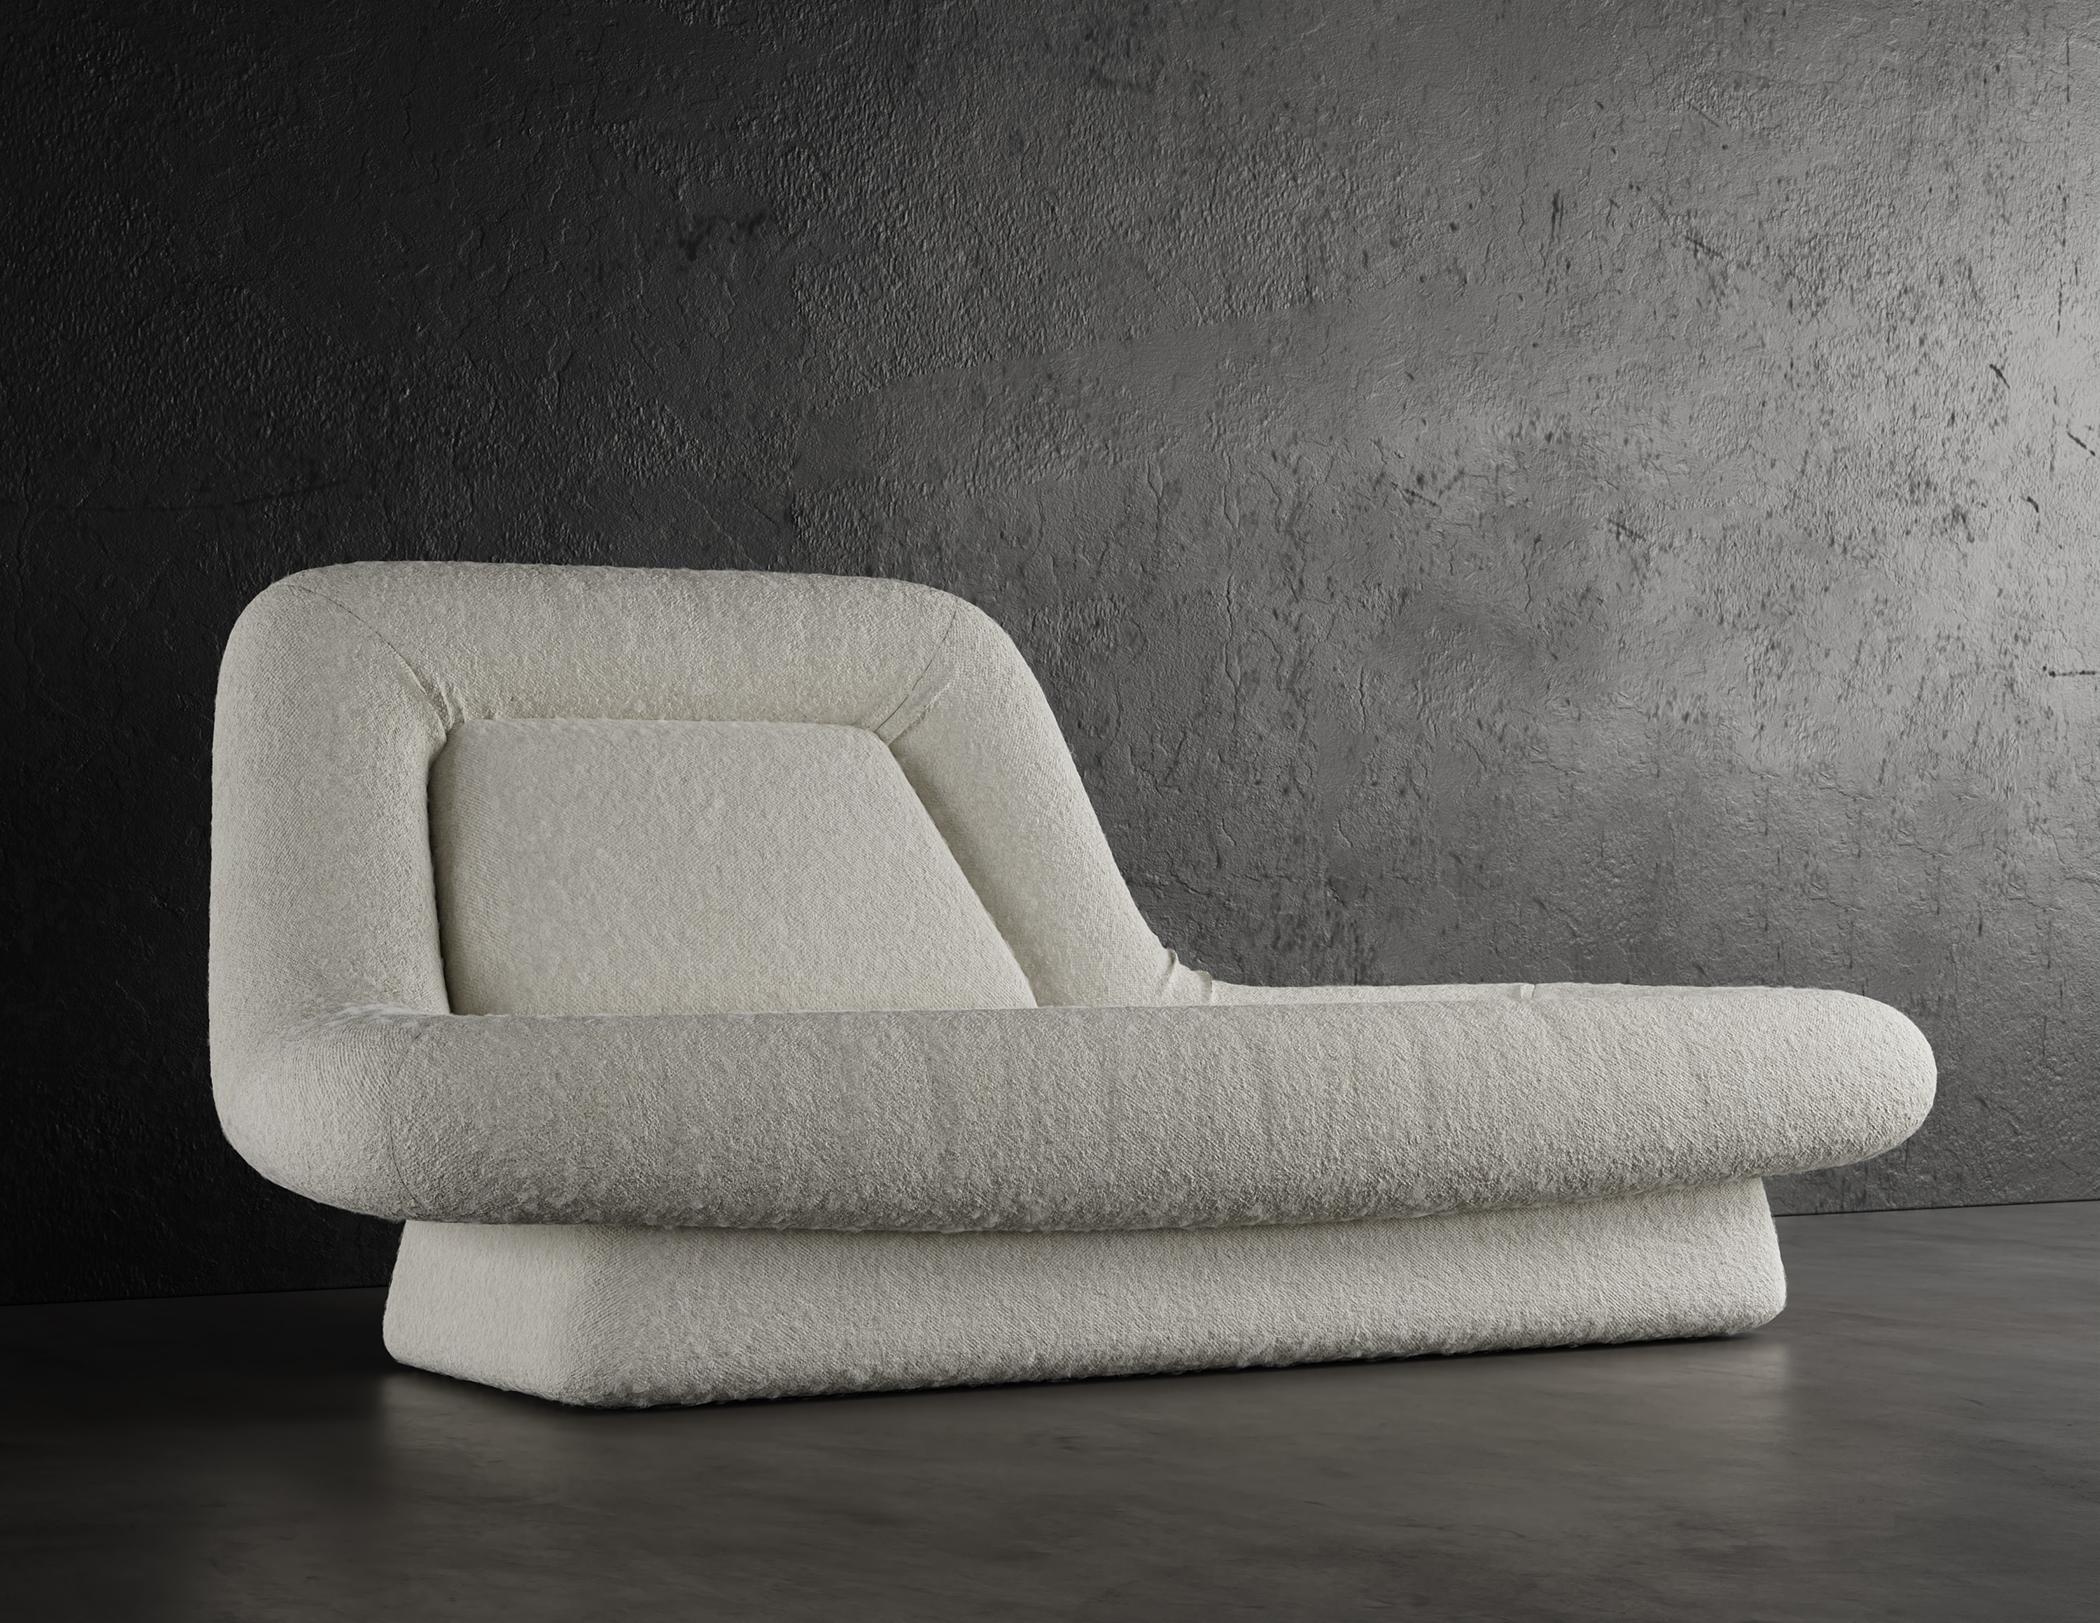 WAVE CHAISE LOUNGE – modernes Design in warmem Weiß mit Wolken Bouclé

Die Wave Chaise Lounge ist ein modernes und stilvolles Möbelstück, das jedem Raum einen Hauch von Eleganz verleiht. Er ist mit einem luxuriösen Cloud-Boucle-Stoff in warmem Weiß